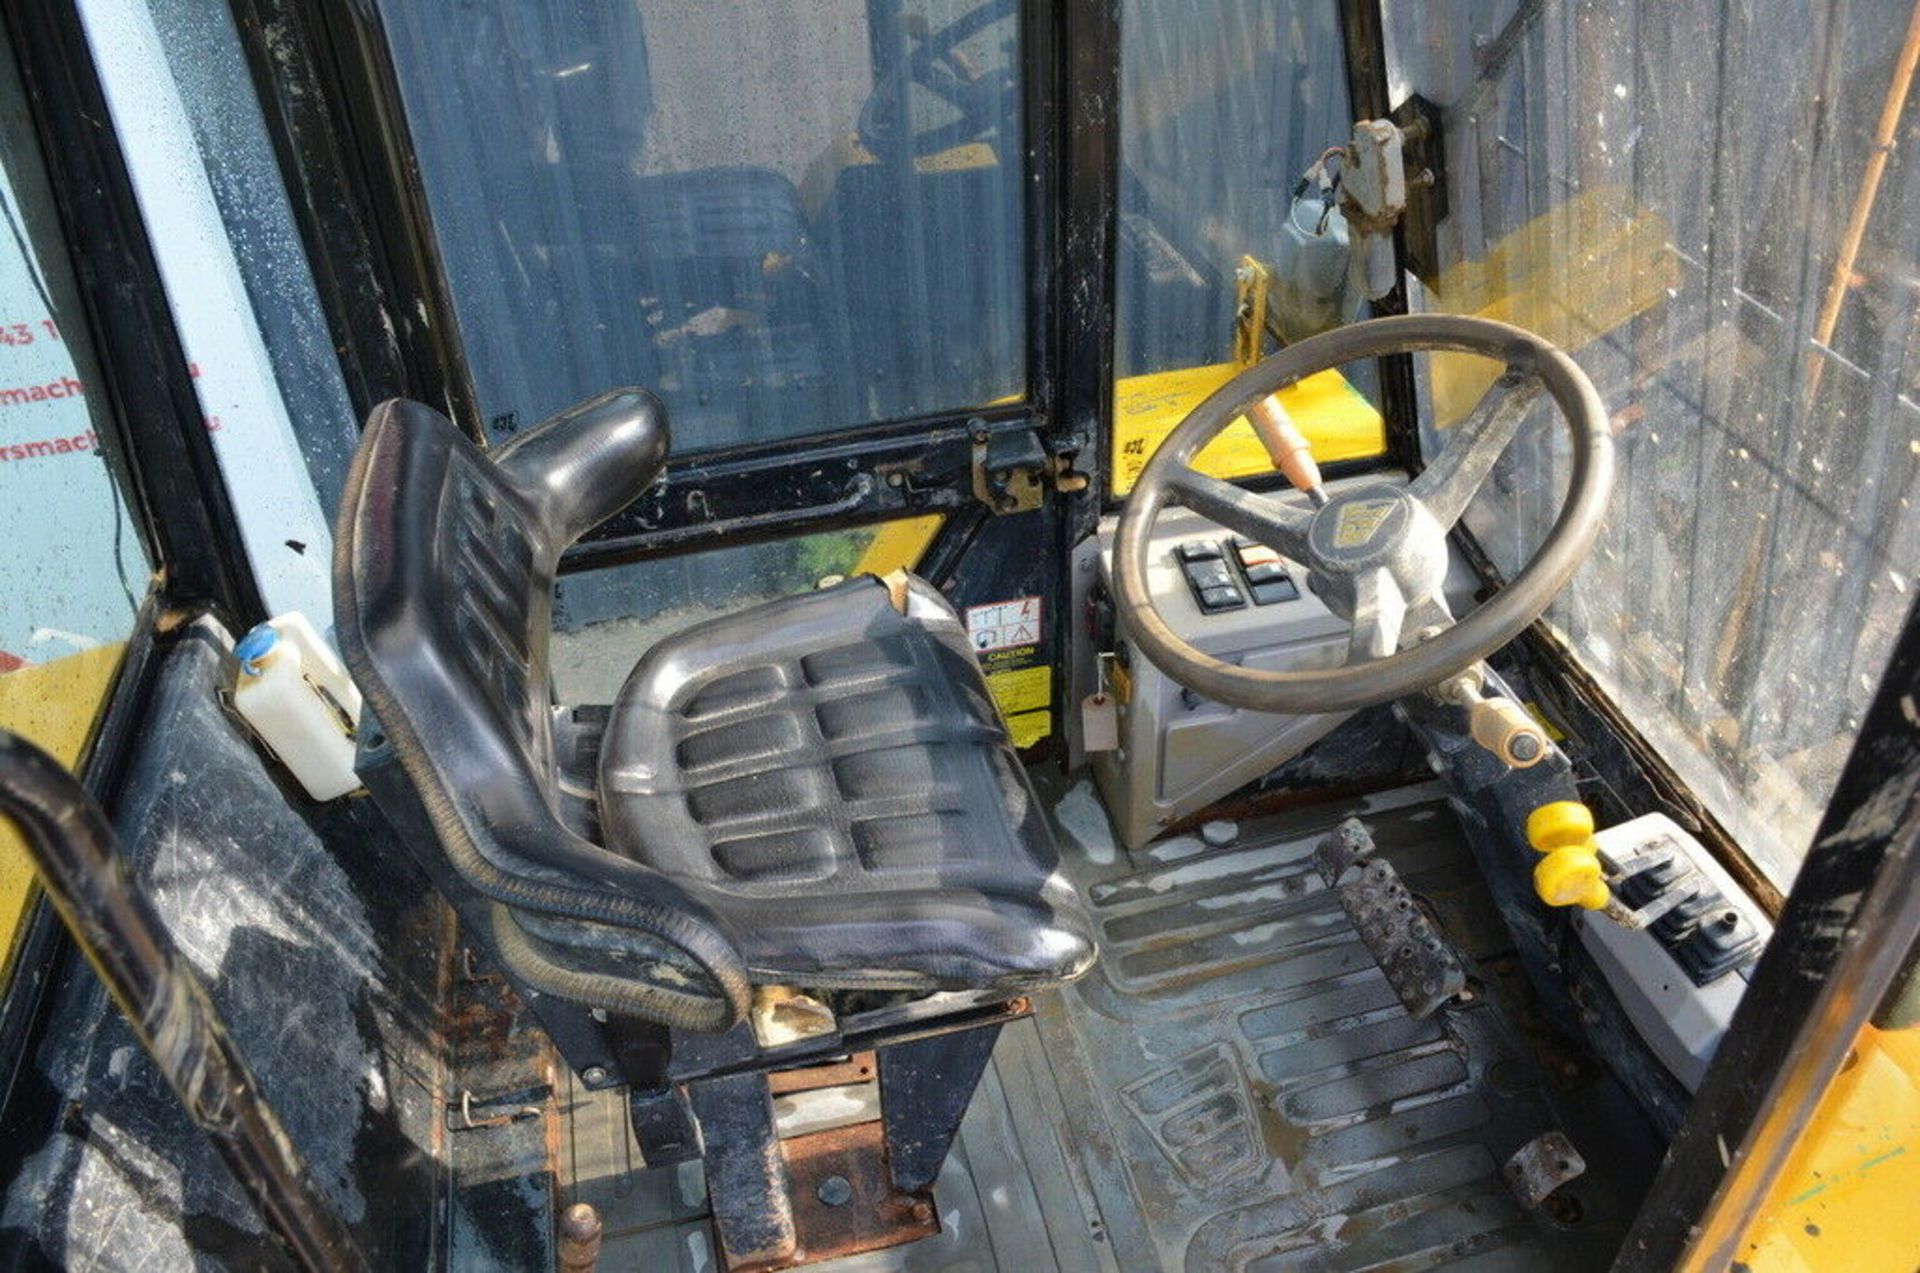 JCB 926 Diesel Forklift 2006 4x4 - Image 6 of 12